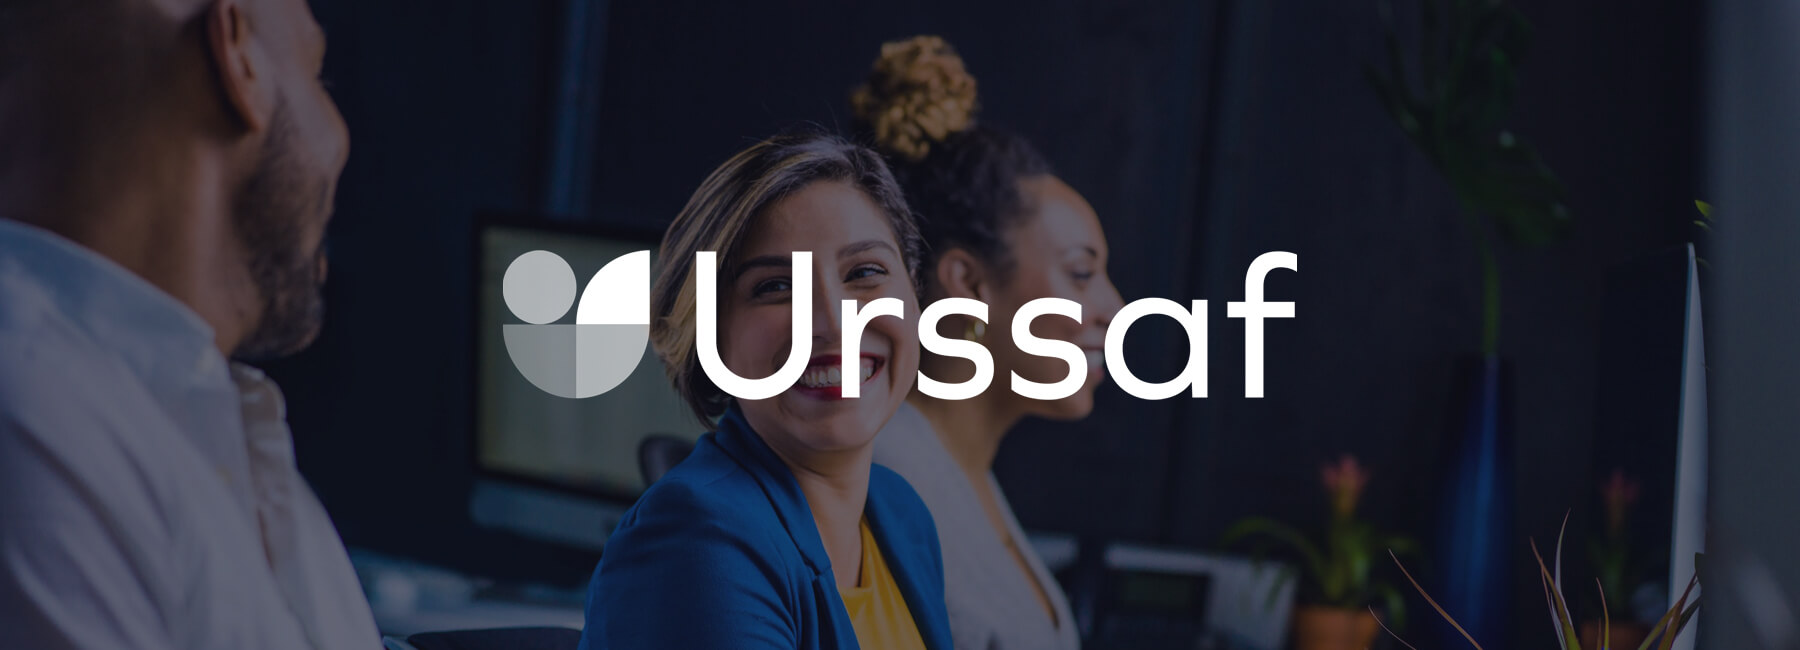 URSSAF versterkt online voice of the customer programma